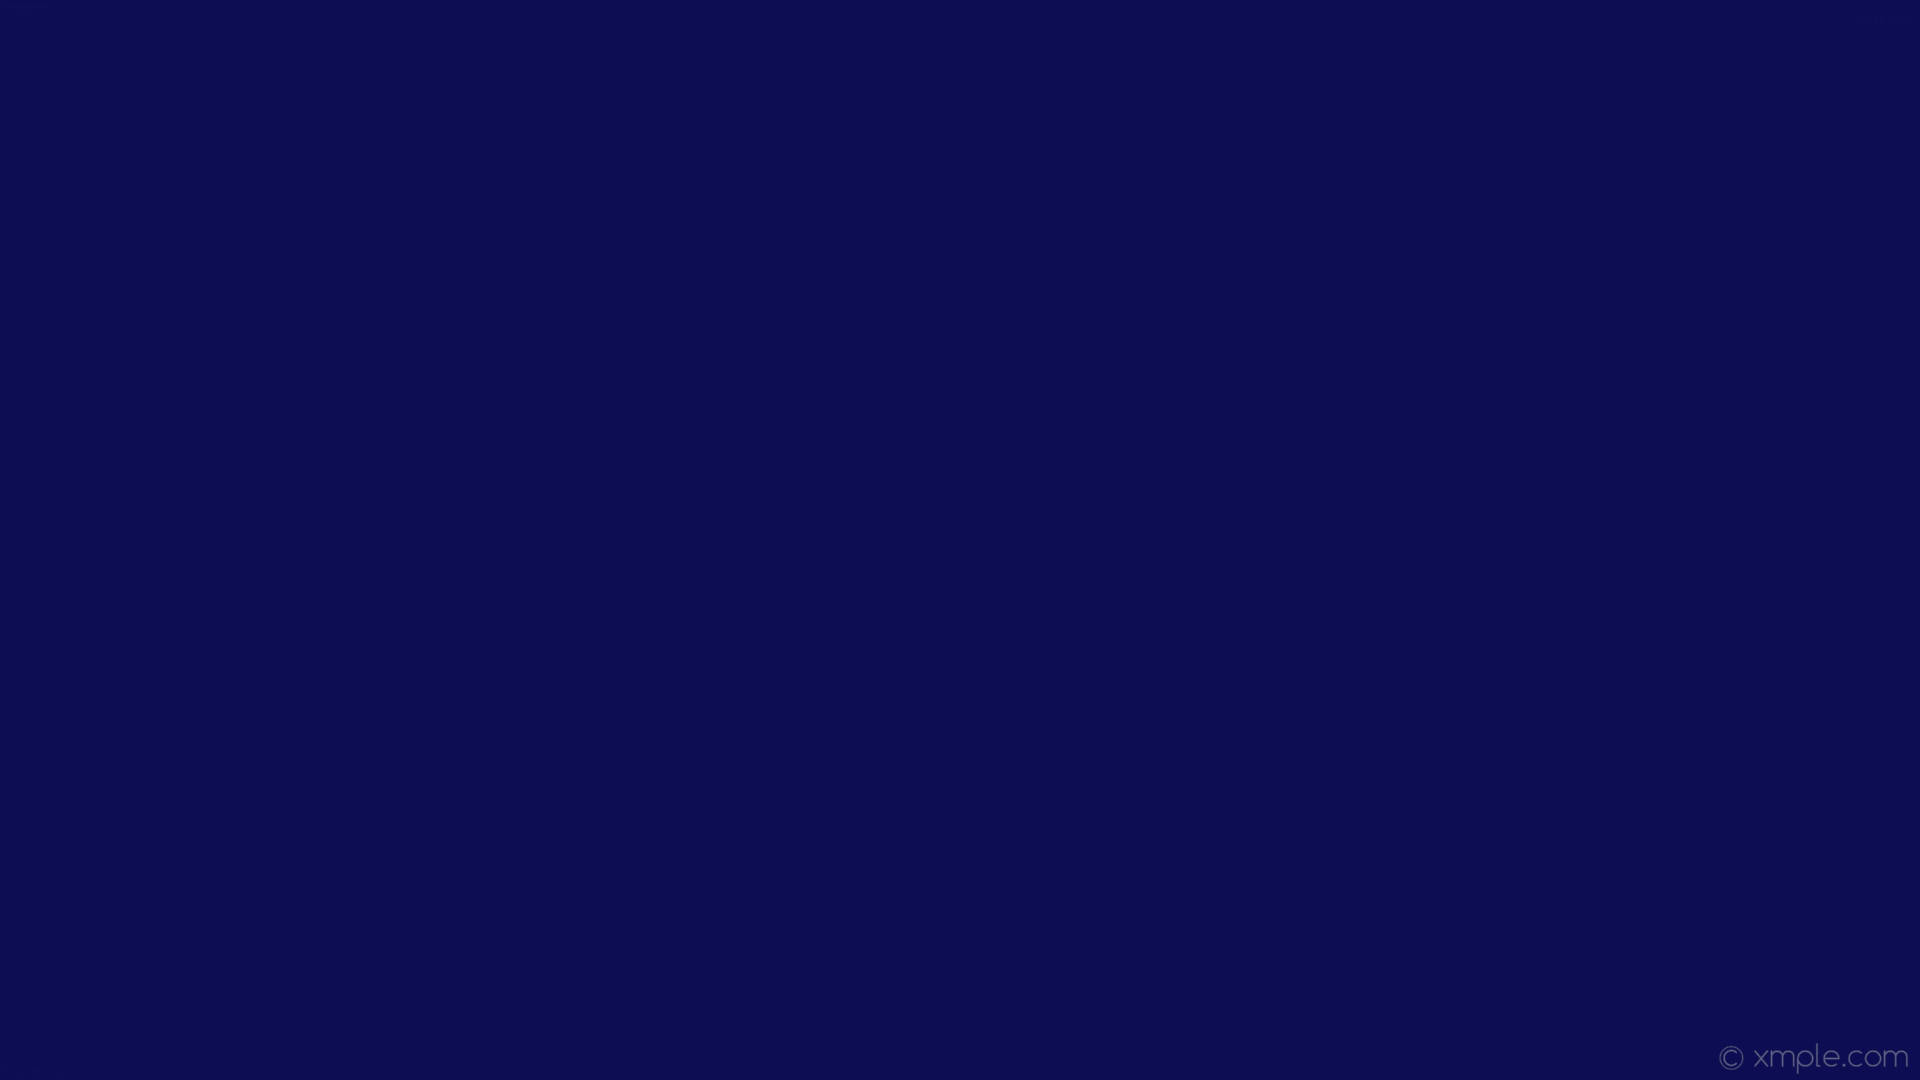 Solid Dark Blue Color Plain Background Background